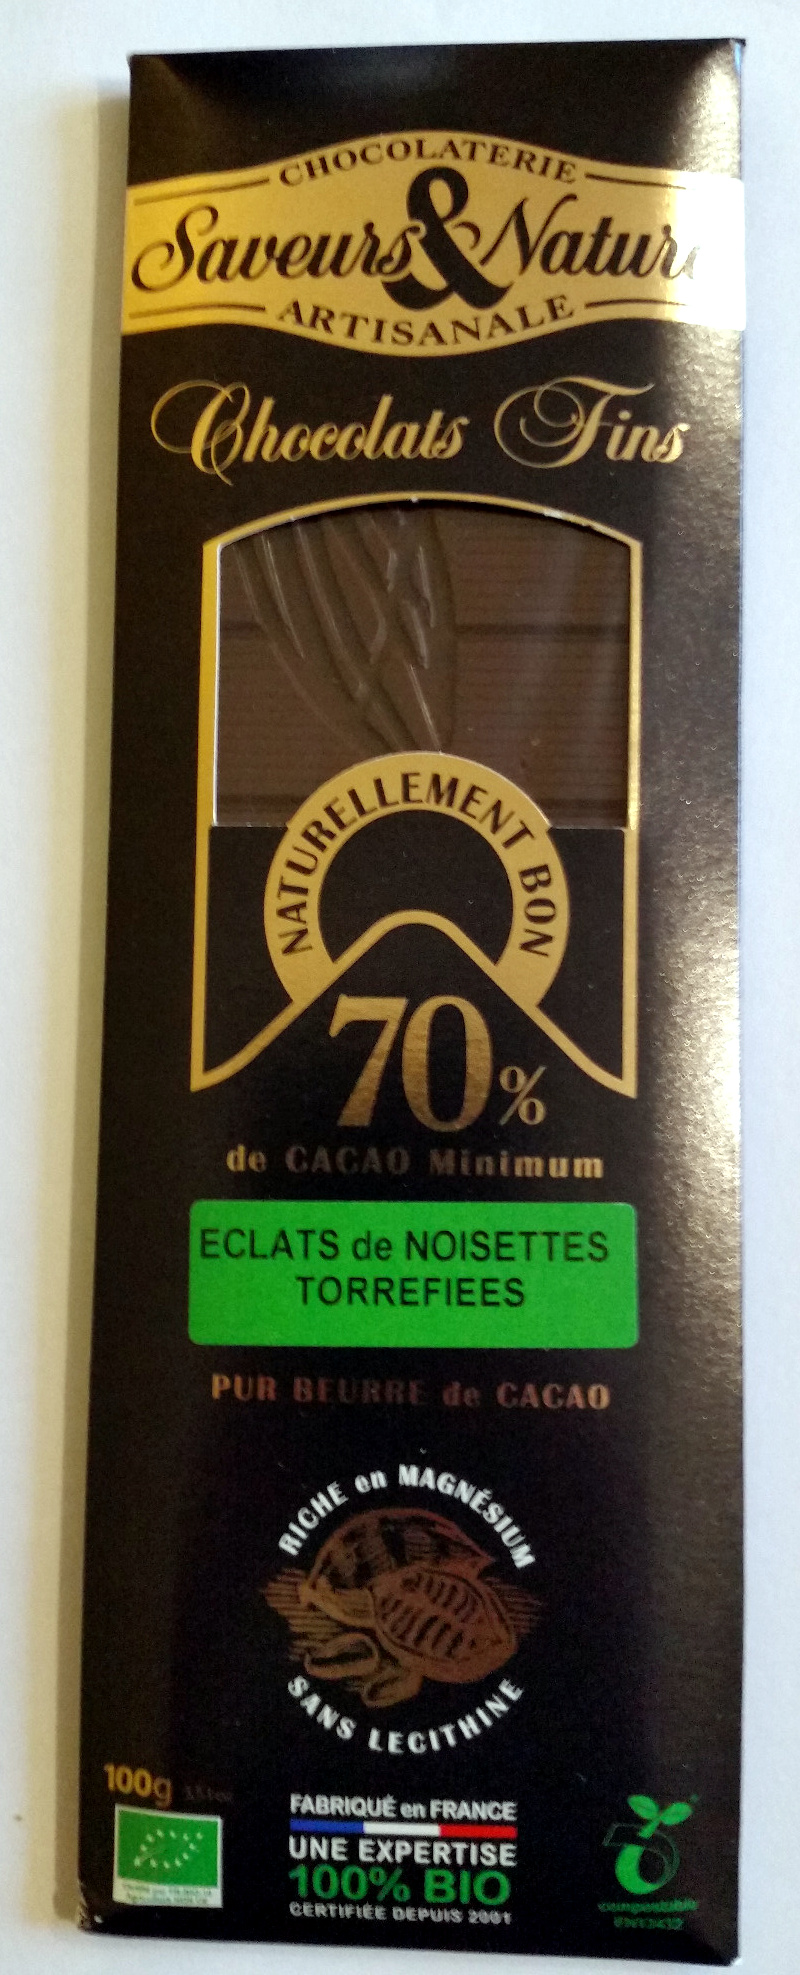 Chocolats fins 70% cacao - Eclats de noisettes torréfiées - Product - fr